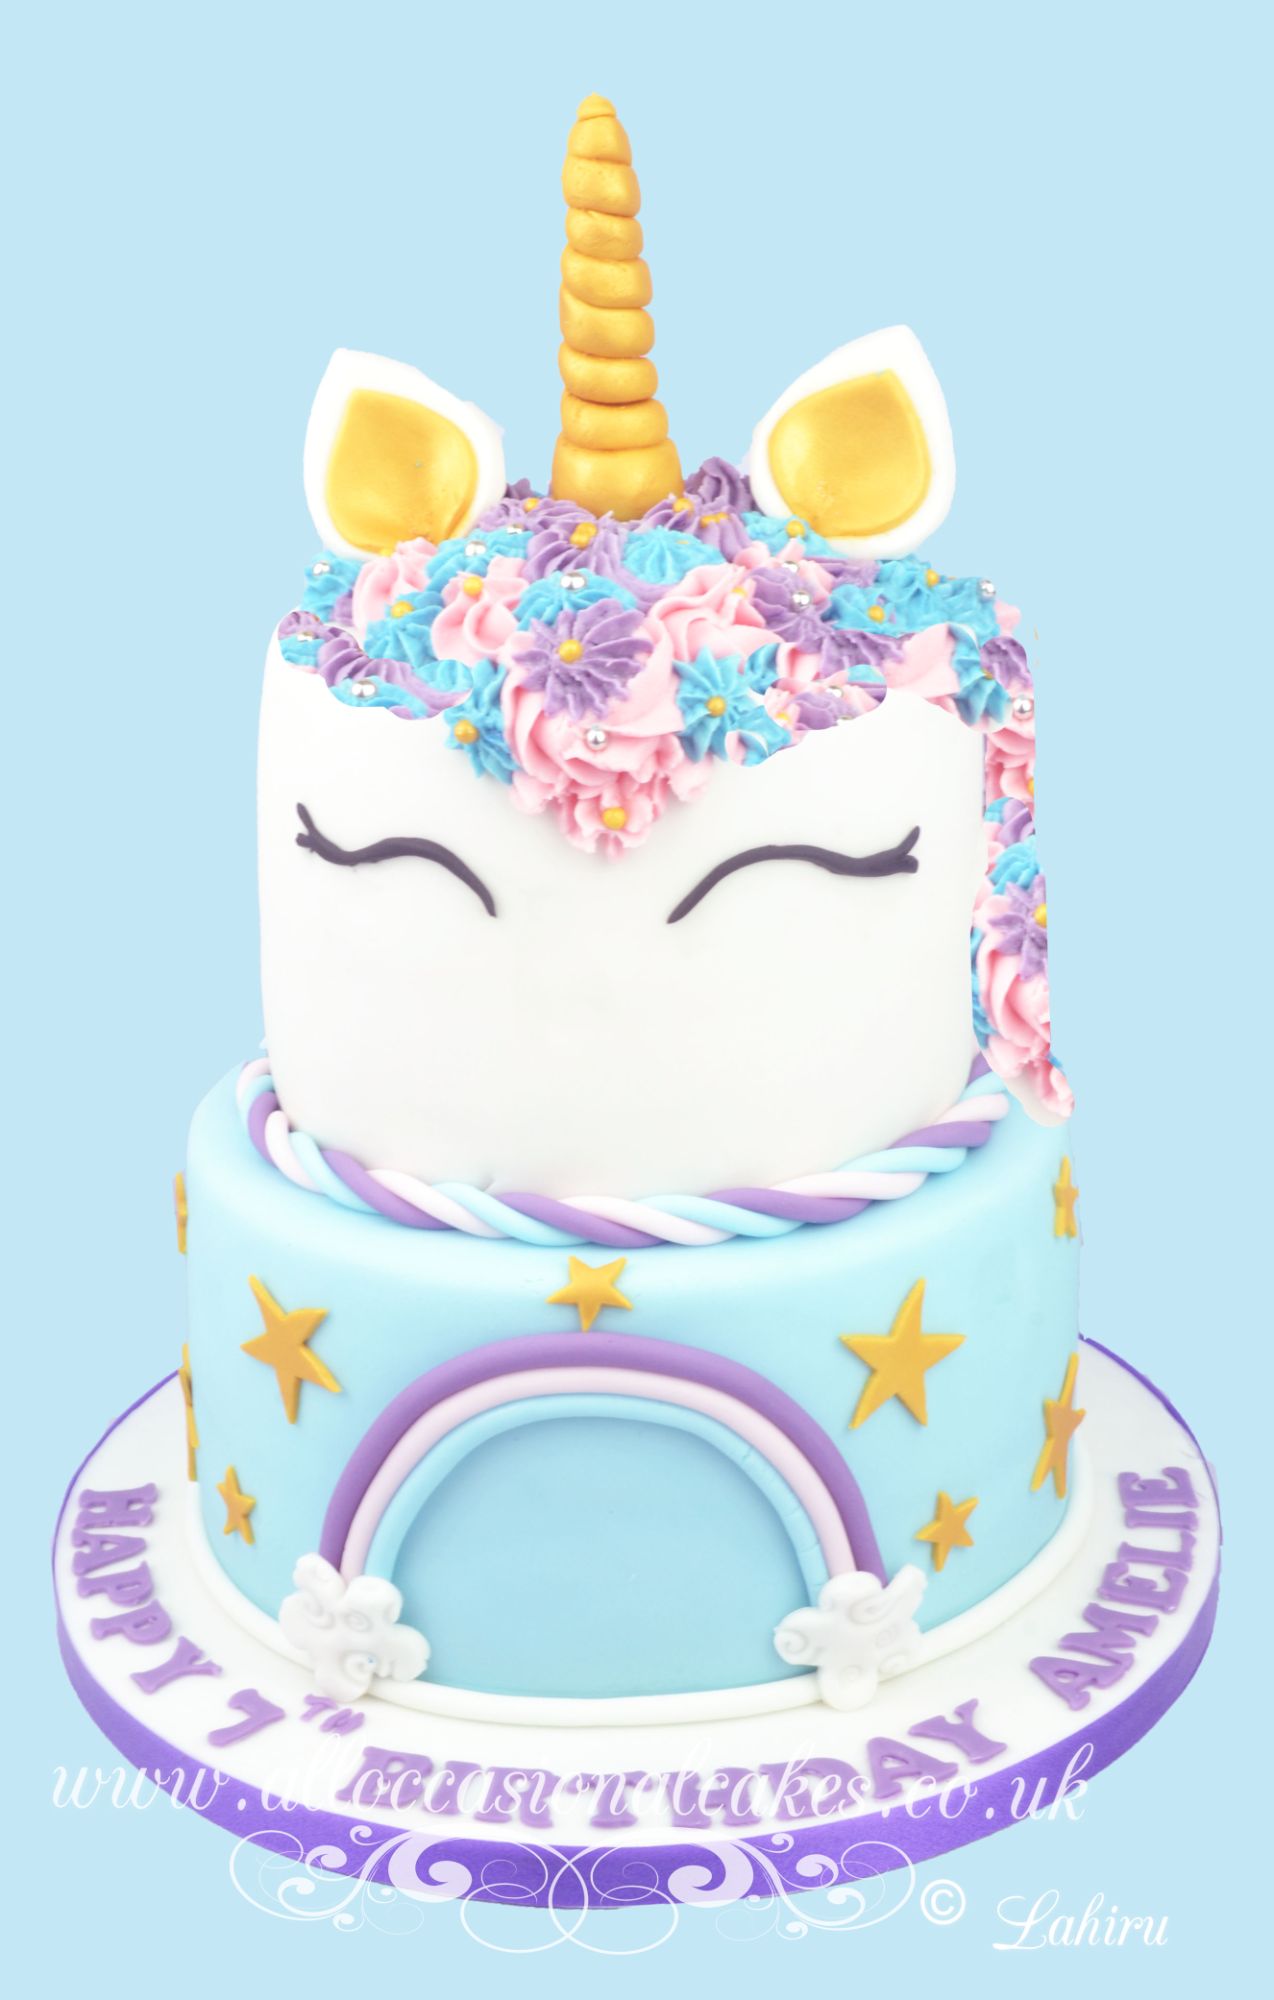 unicon themed cake